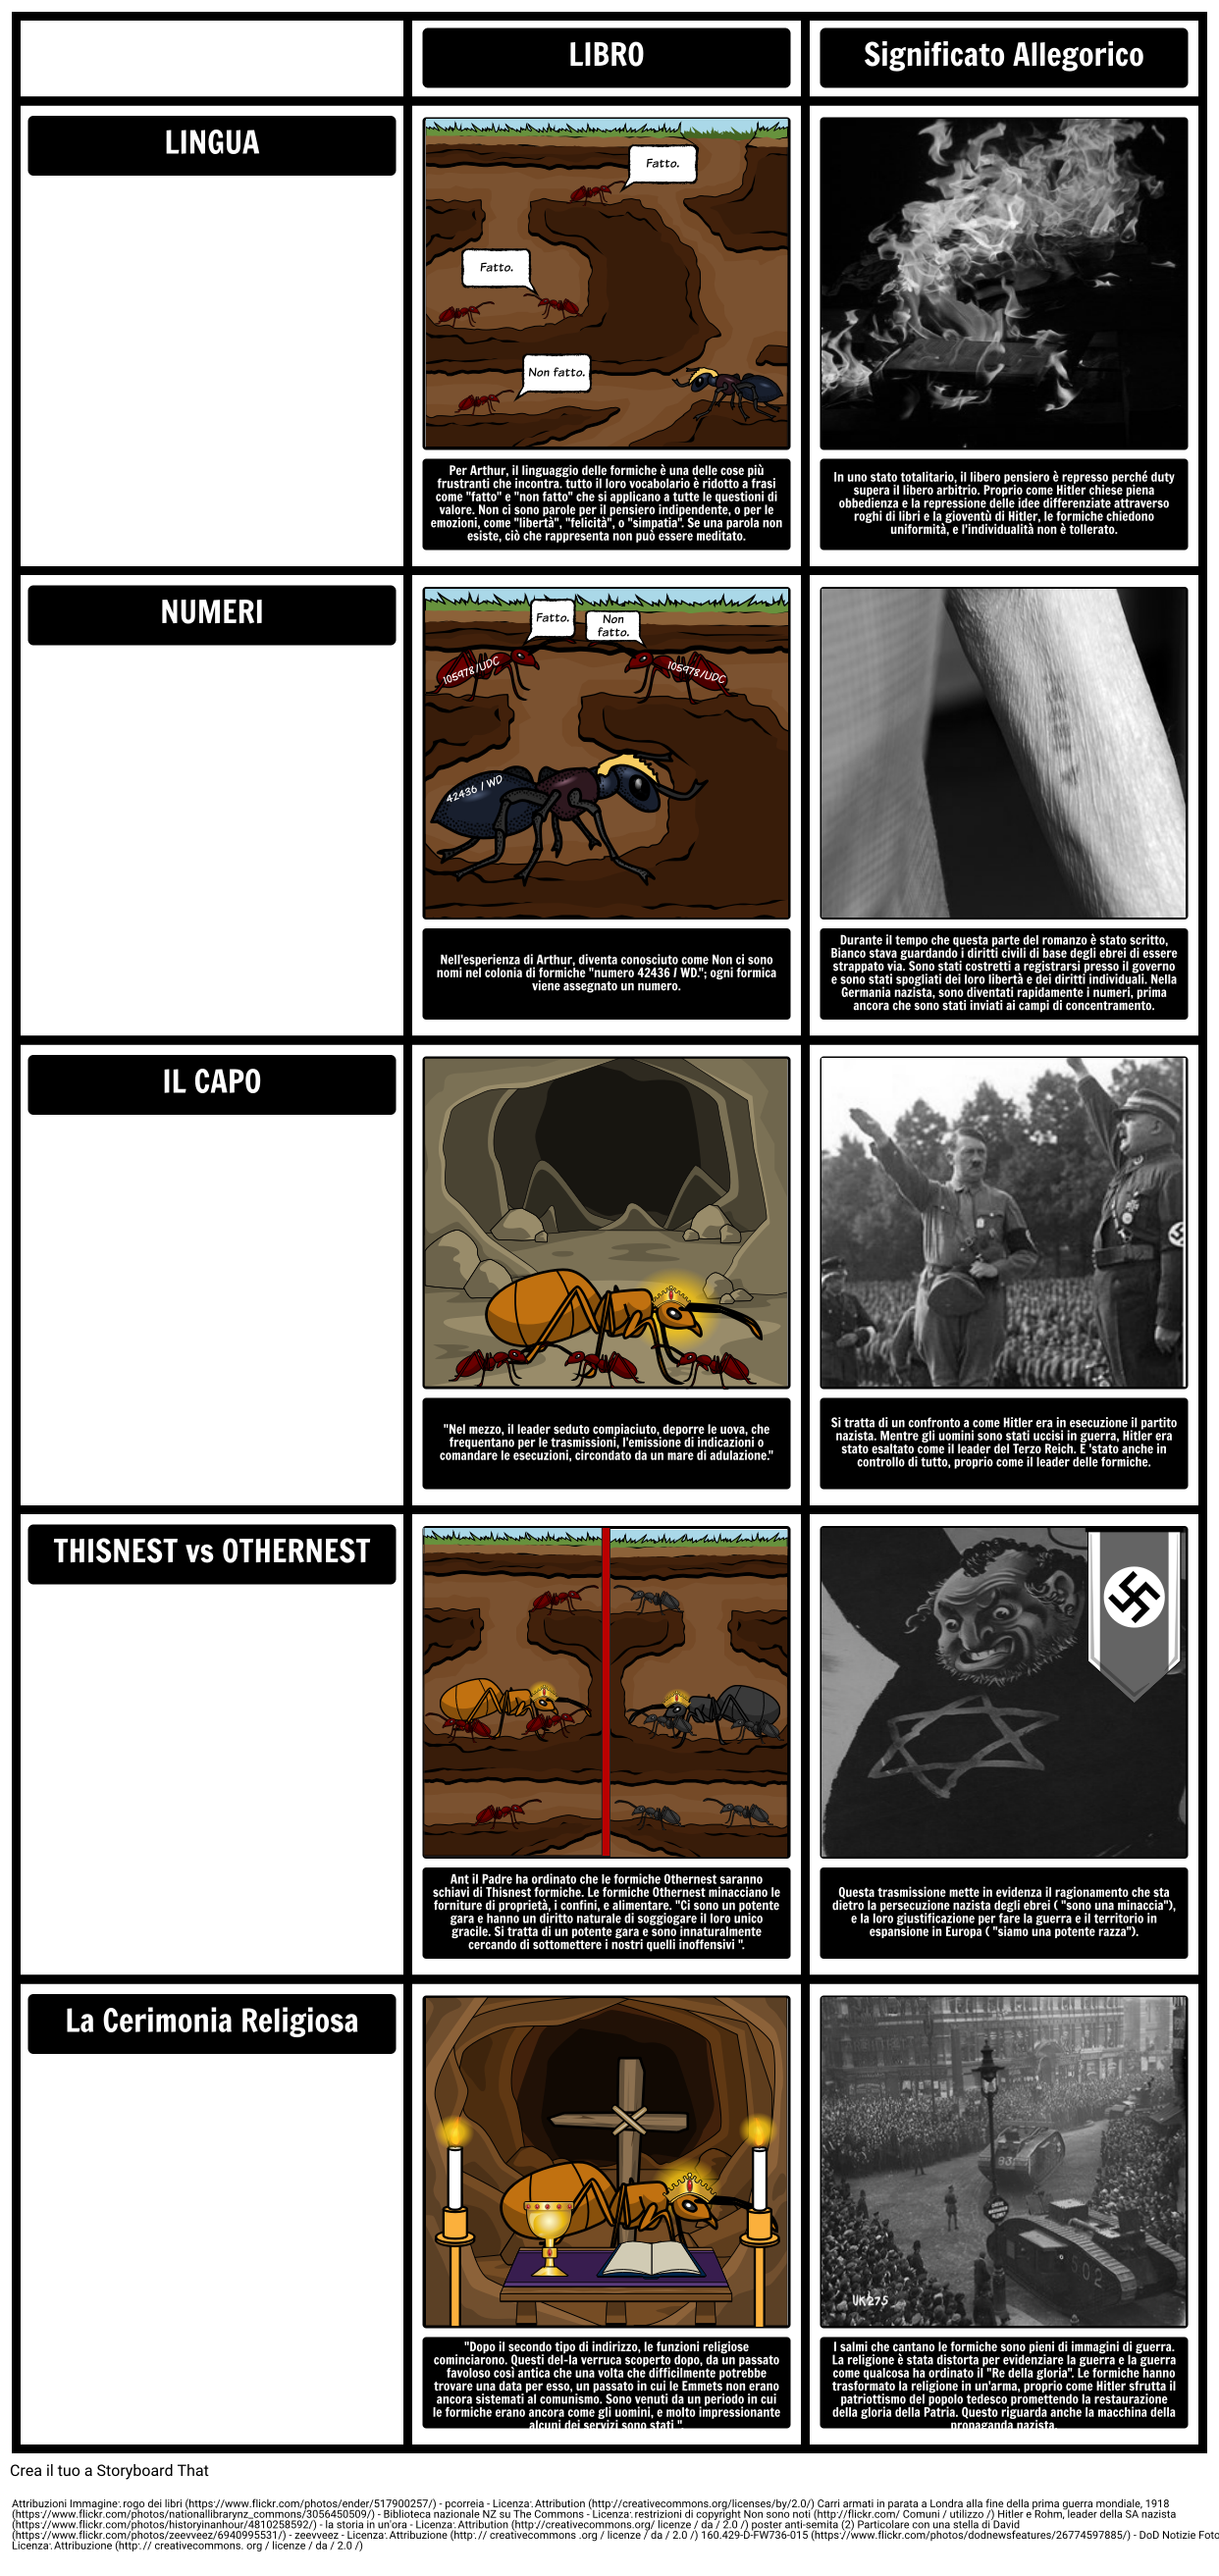 TOAFK - Allegoria della lezione delle formiche in "La spada nella roccia"